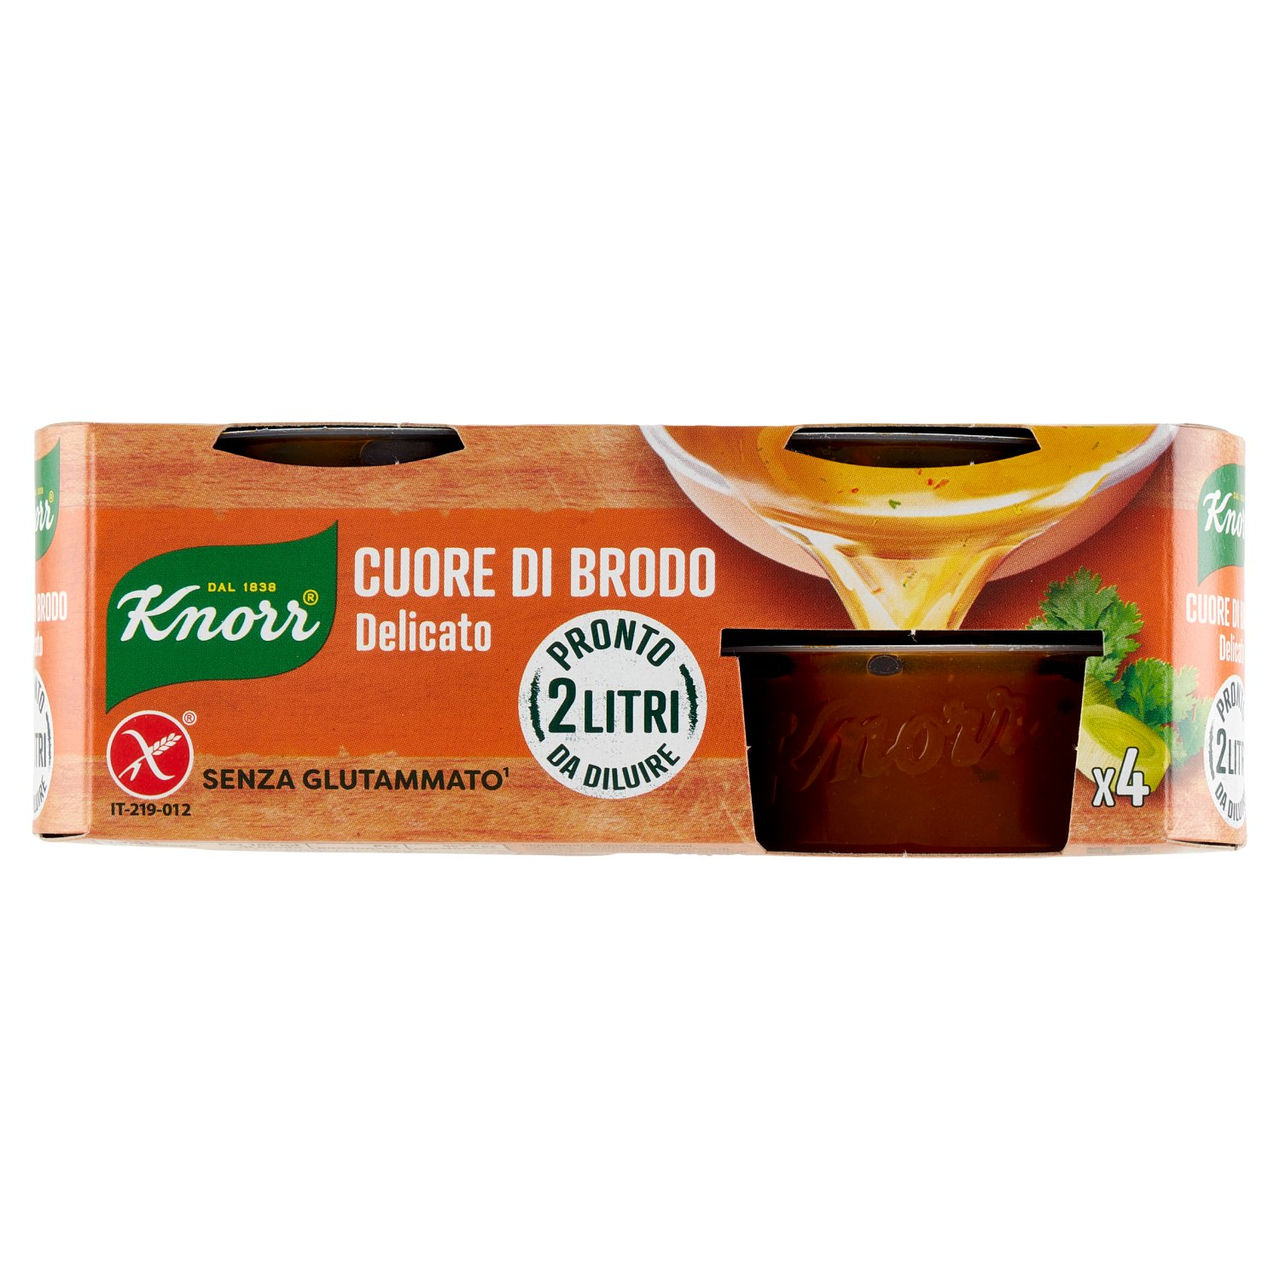 Knorr Cuore di Brodo Delicato 4 x 28 g